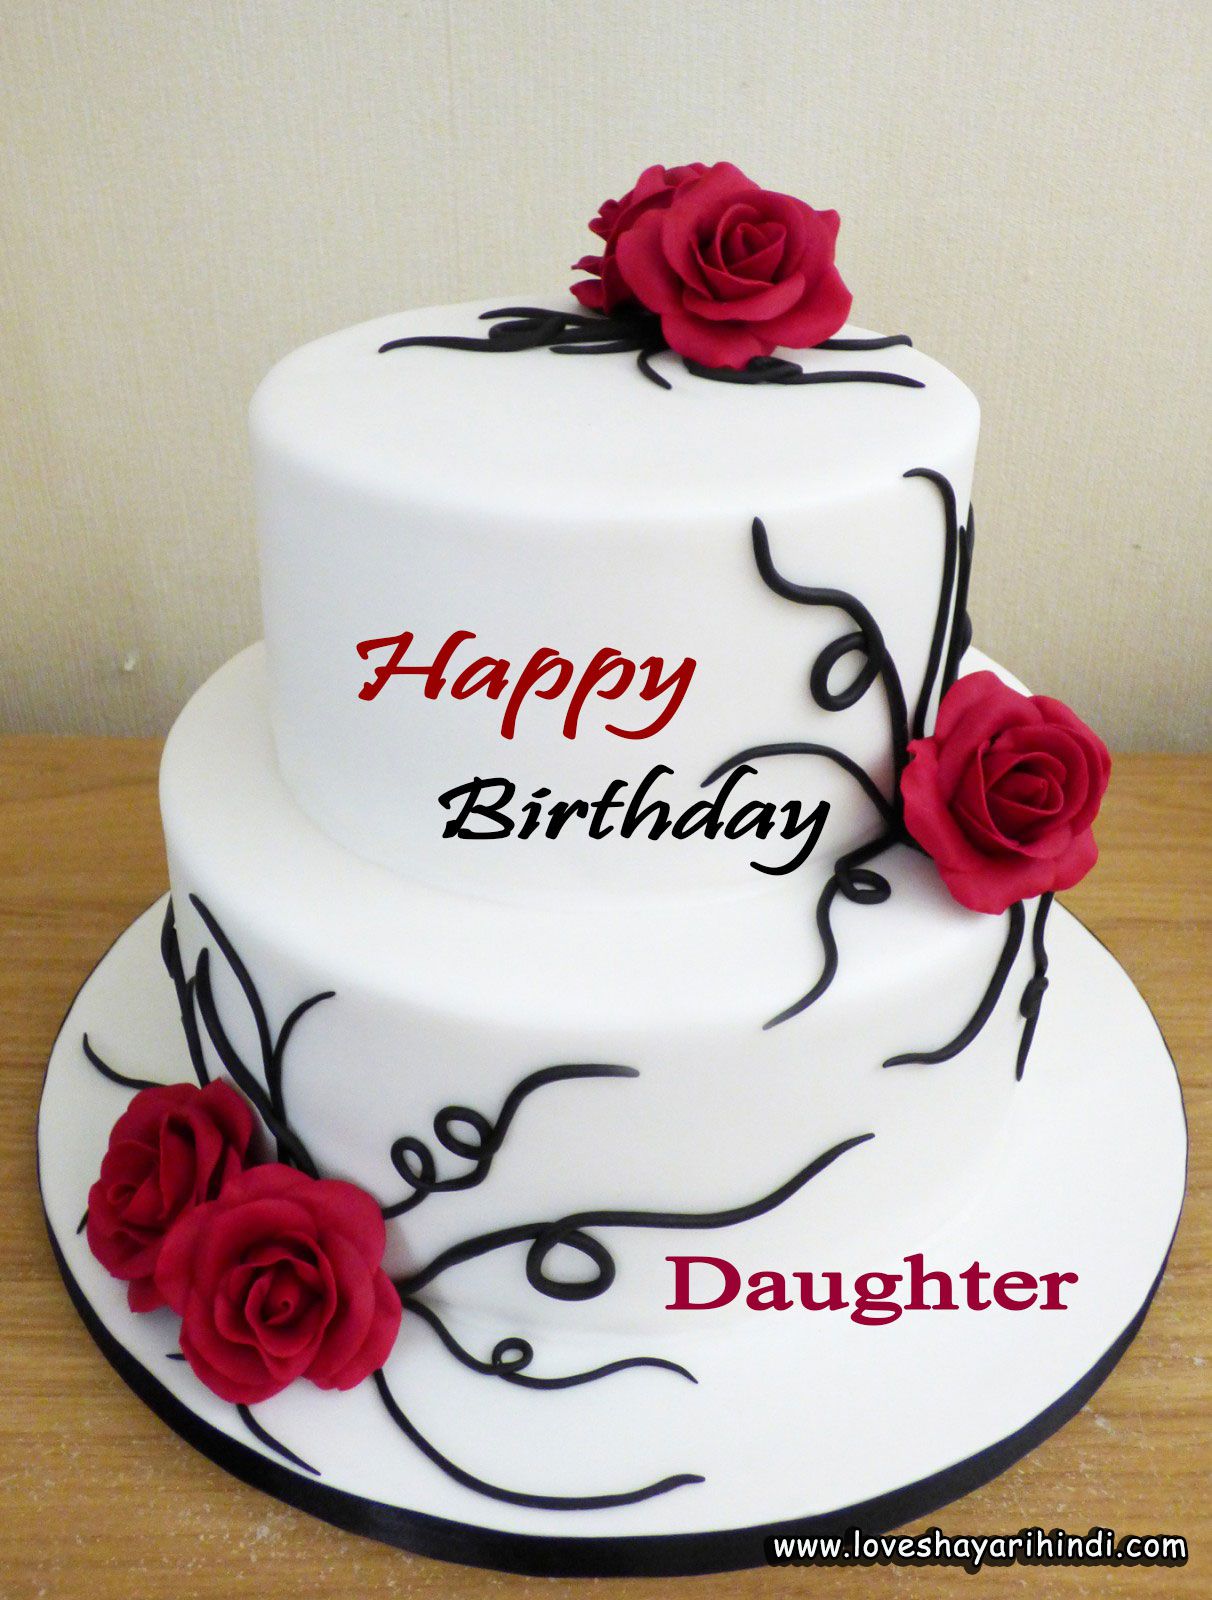 15+ Best Birthday Wishes for Daughter - बेटी के लिए जन्मदिन की शुभकामनाएं